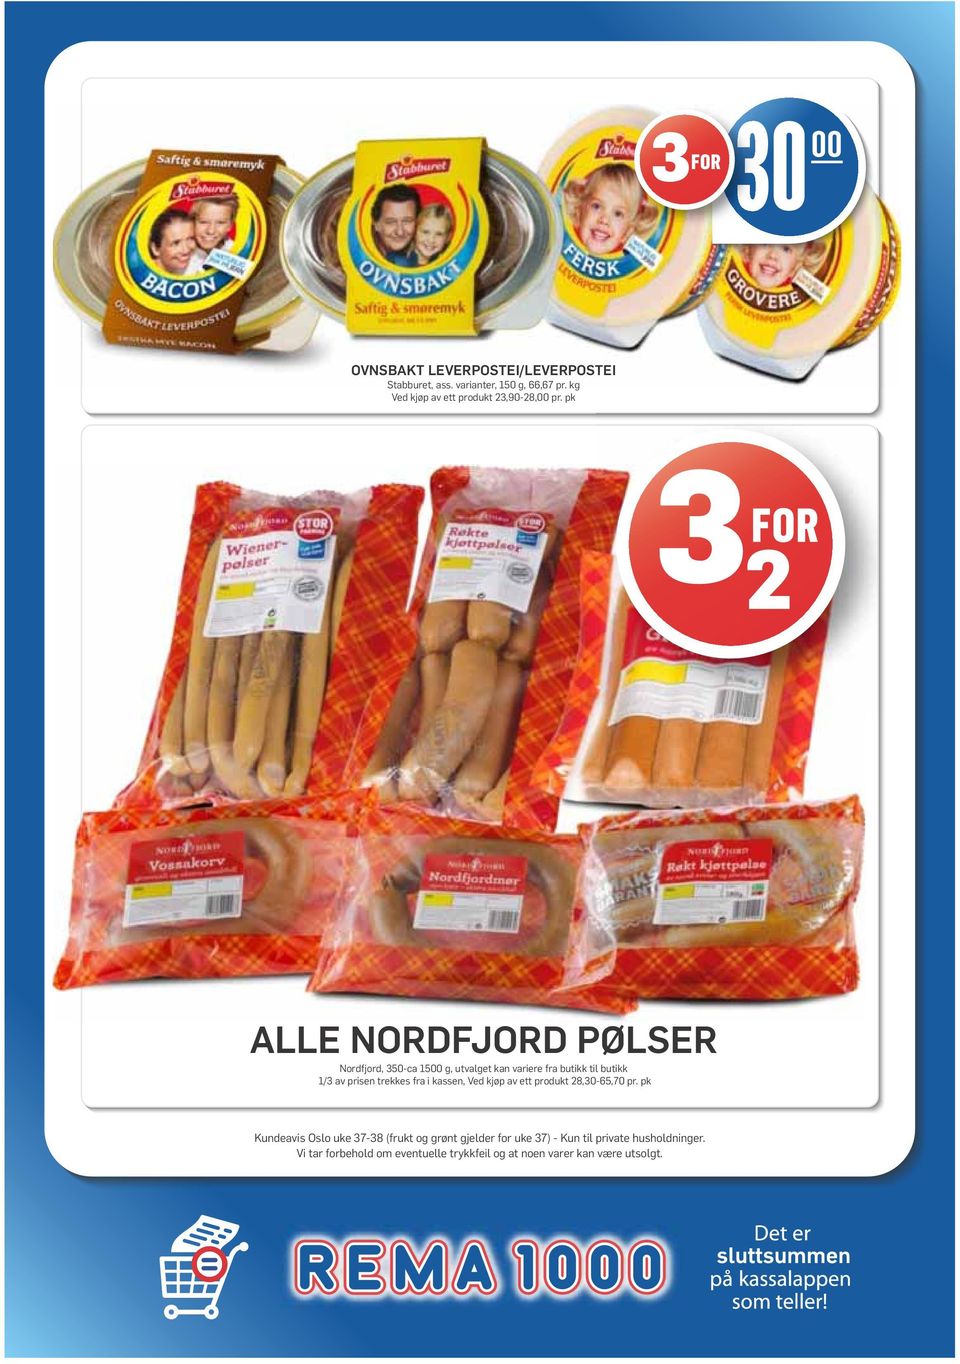 pk ALLE NORDFJORD PØLSER Nordfjord, 350-ca 1500 g, utvalget kan variere fra butikk til butikk 1/3 av prisen trekkes